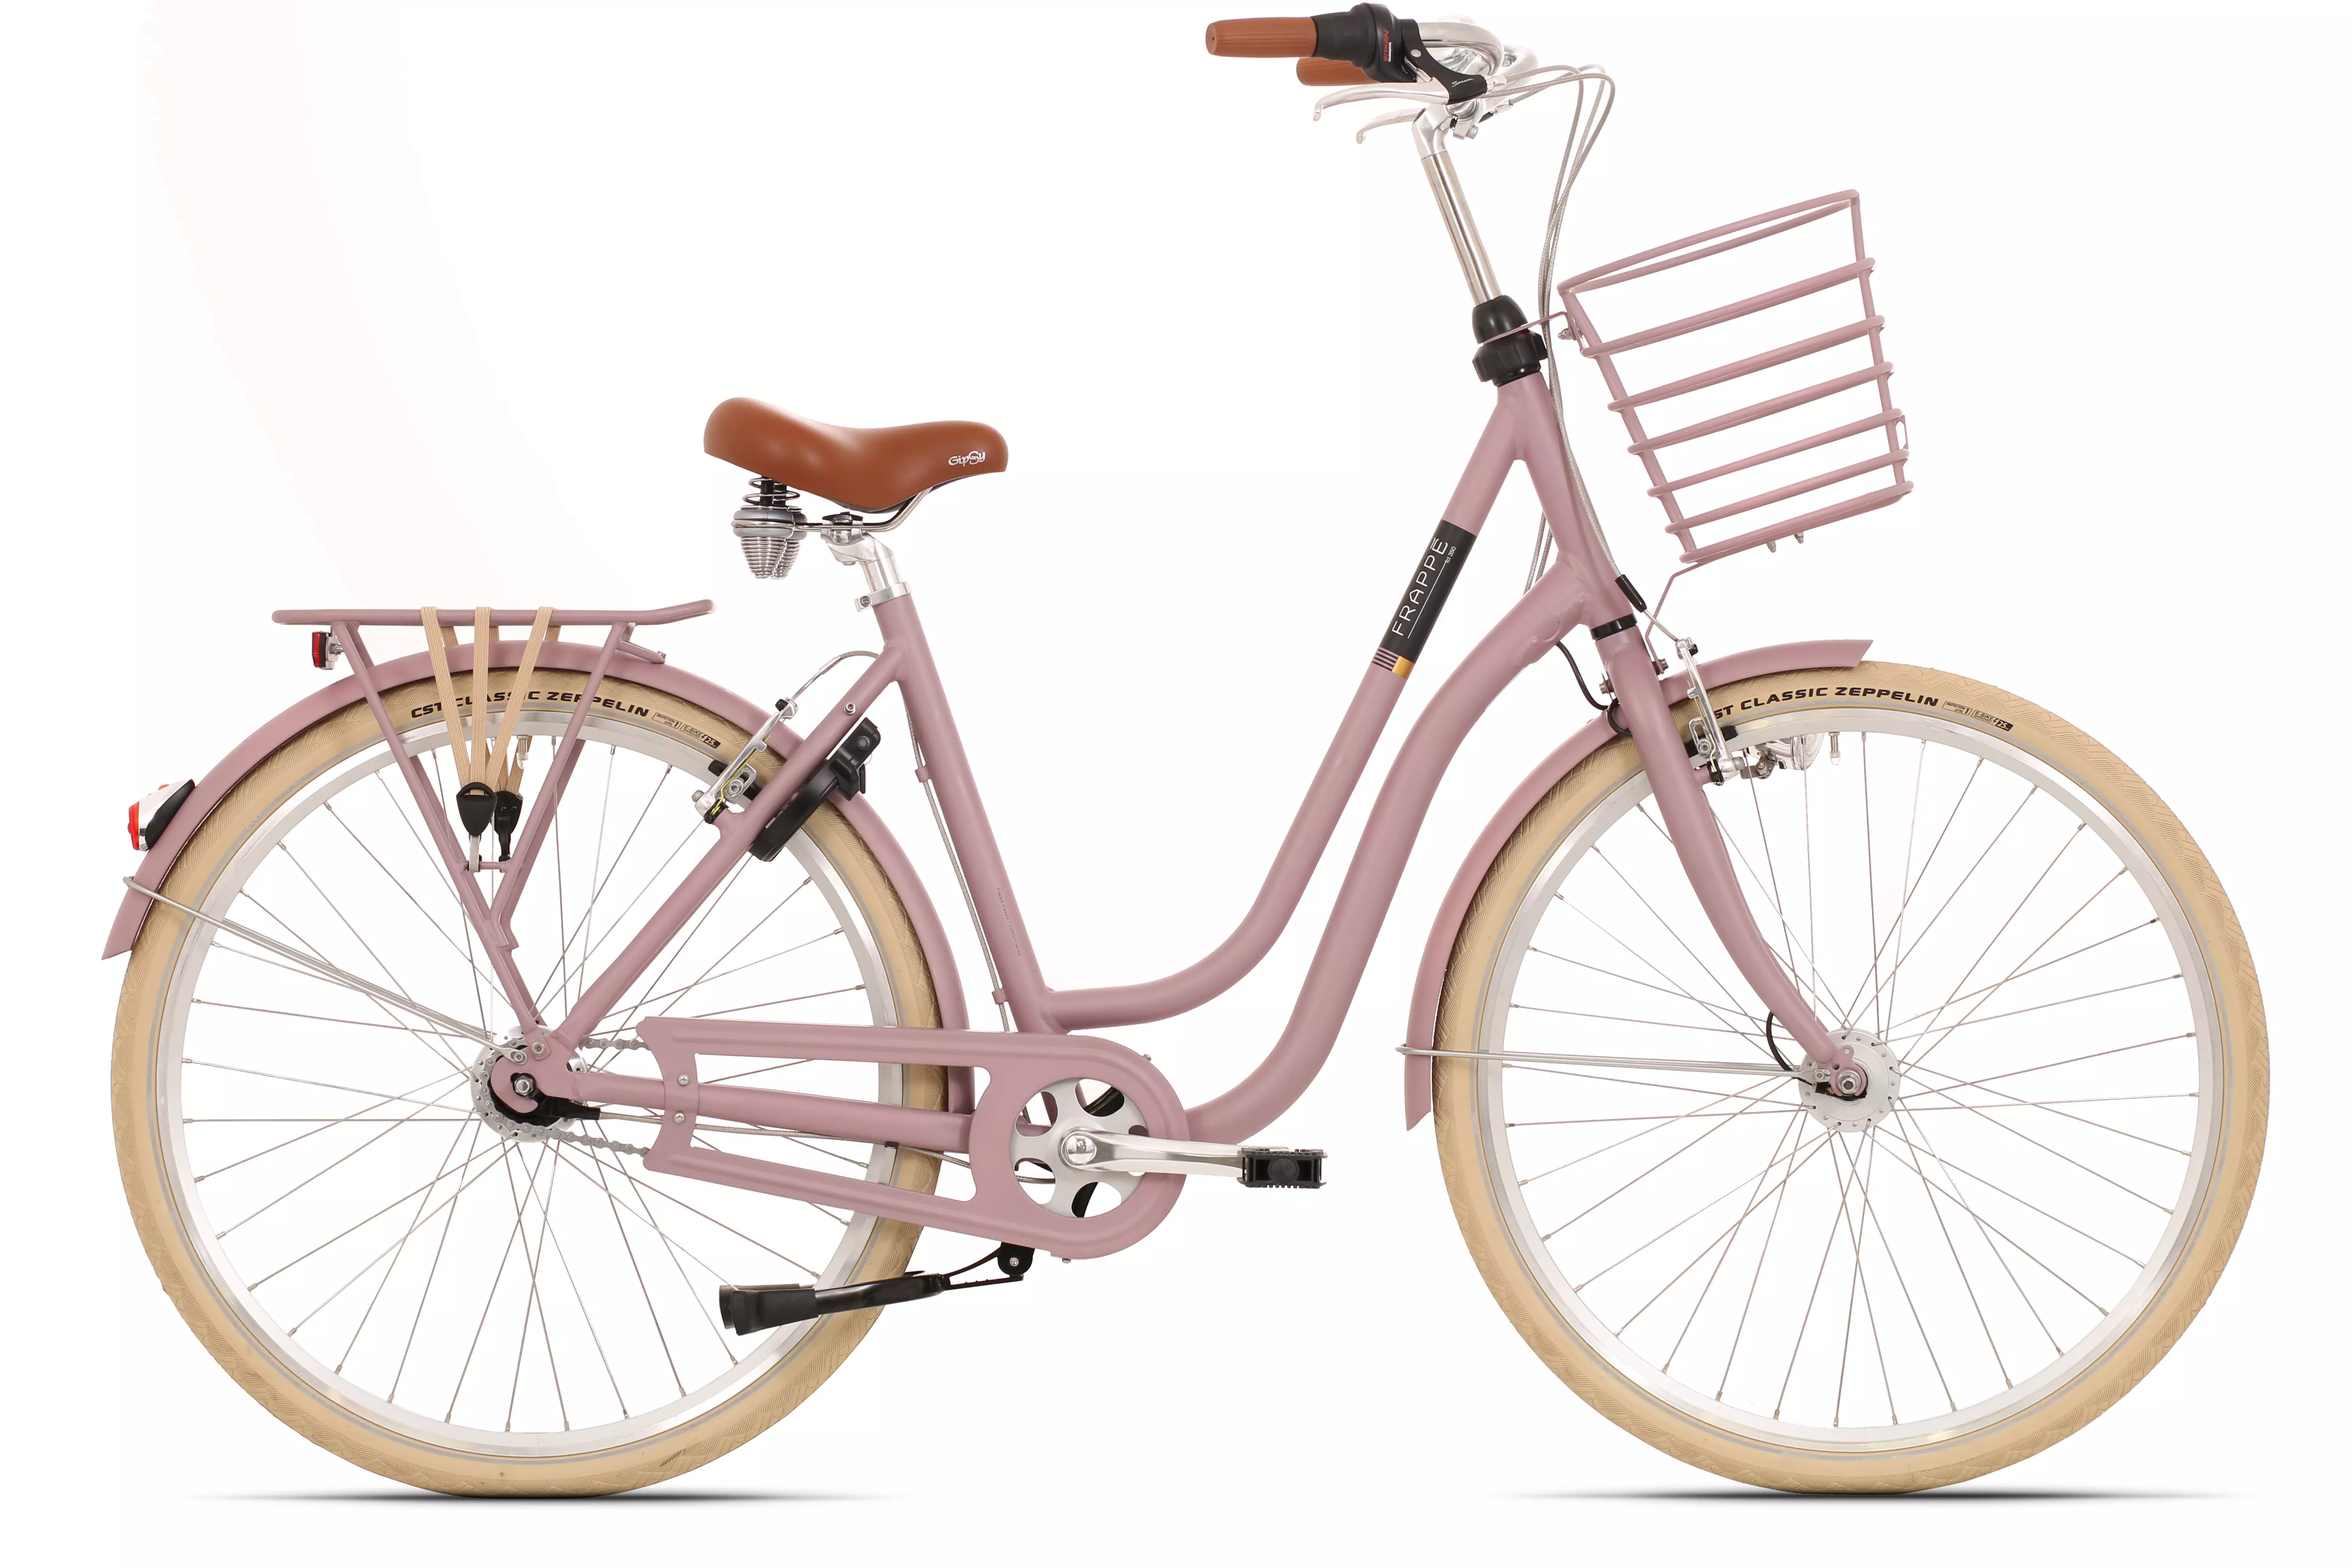 Frappé FCL 350 női városi kerékpár [50 cm, matt pink]